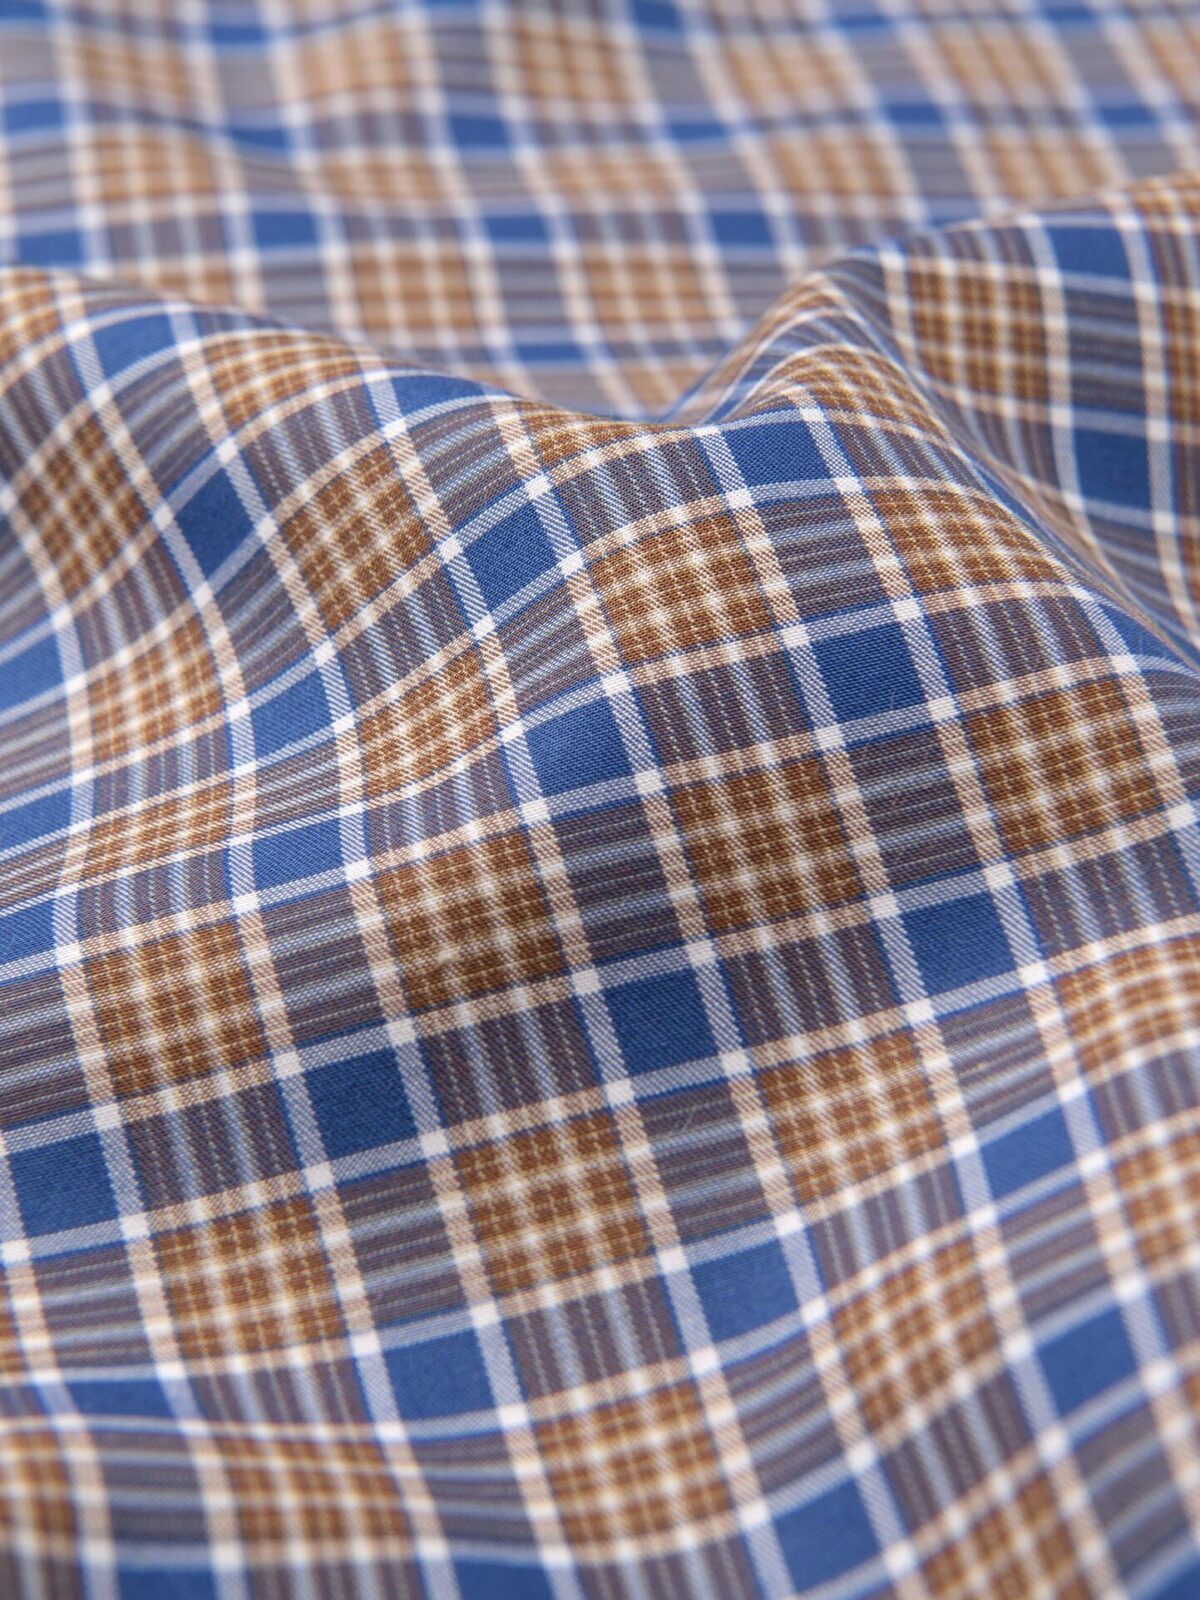 U03: Soft Blue, Carmel & Black Organic Flannel Plaid, 100% Cotton, 44  wide. $8.99 per half yard. - Islander Sewing